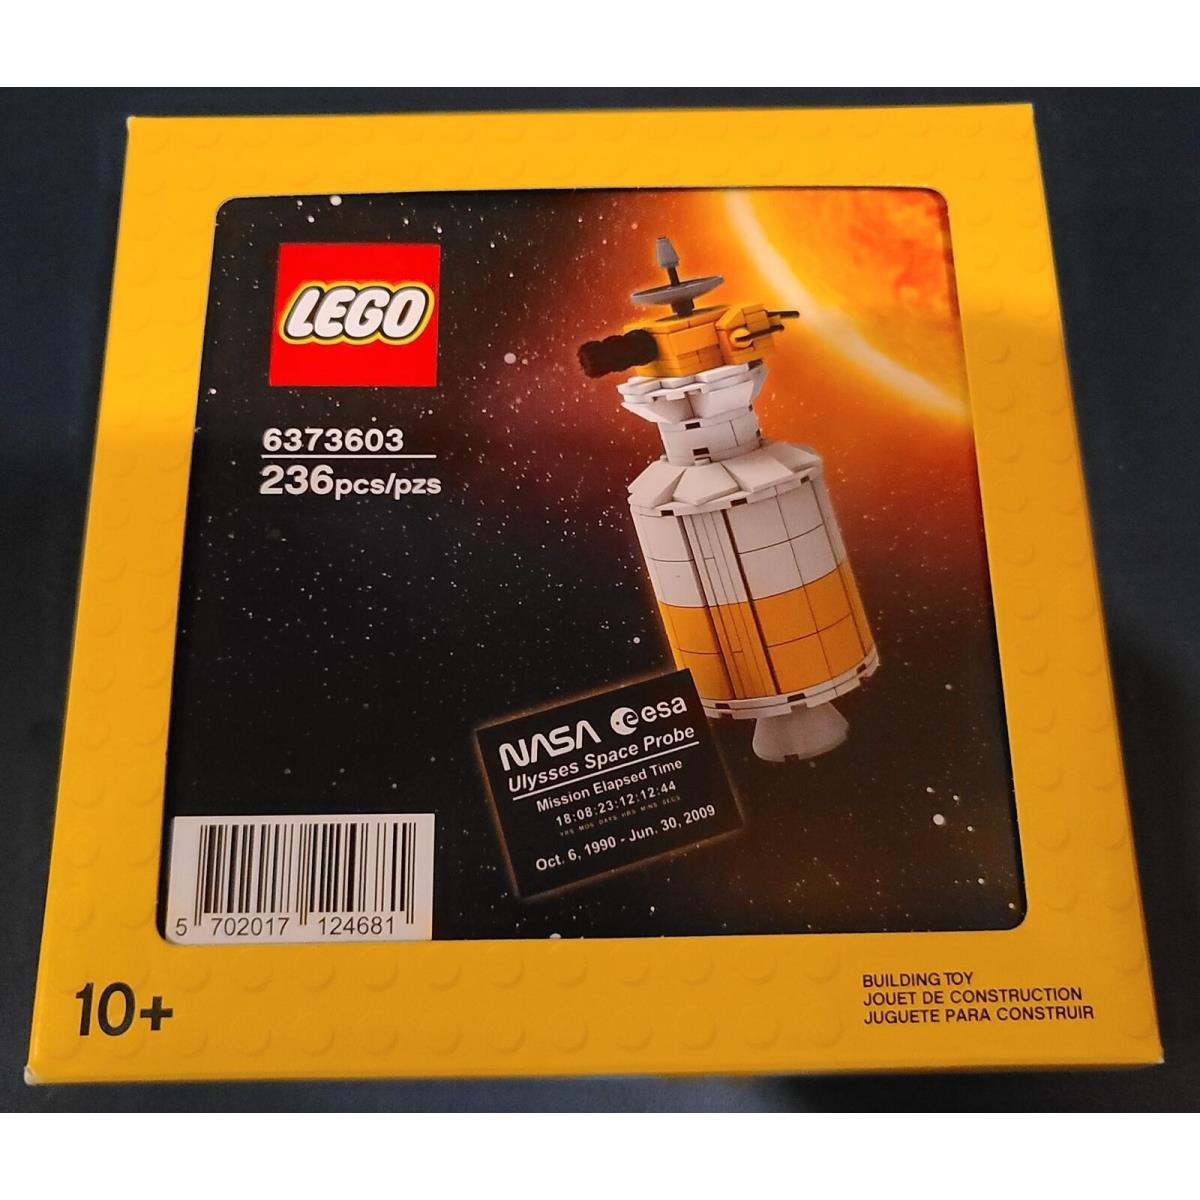 Lego 5006744 Ulysses Space Probe Satellite Set 6373603